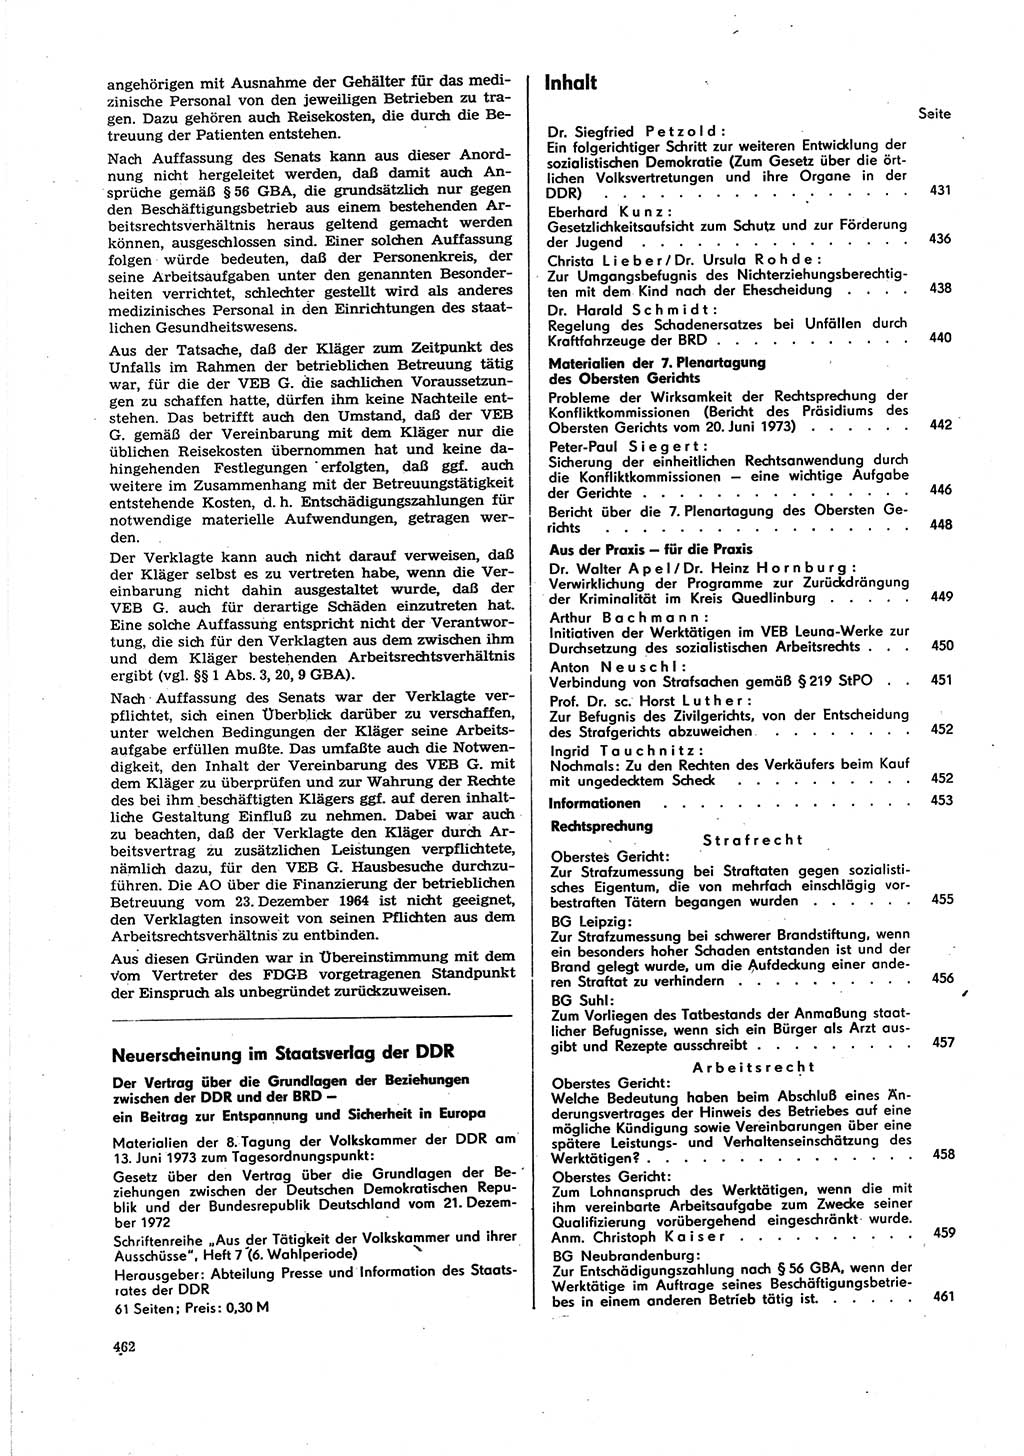 Neue Justiz (NJ), Zeitschrift für Recht und Rechtswissenschaft [Deutsche Demokratische Republik (DDR)], 27. Jahrgang 1973, Seite 462 (NJ DDR 1973, S. 462)